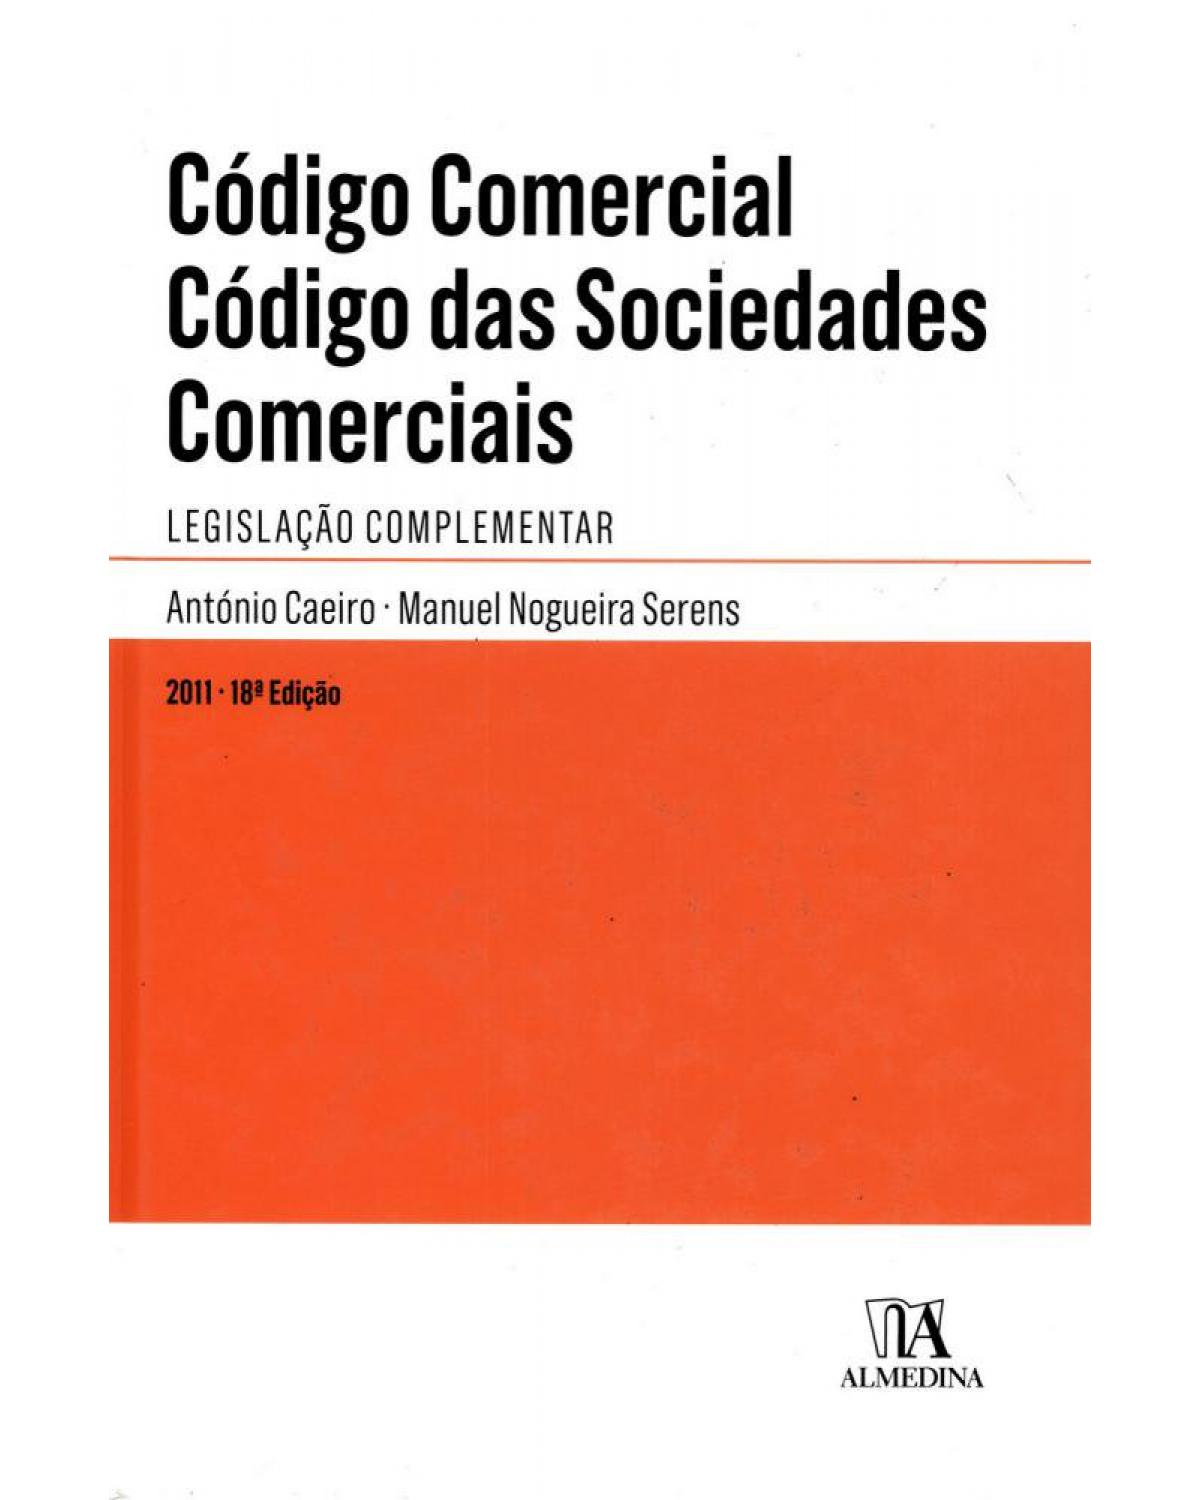 Código comercial - código das sociedades comerciais: Legislação complementar - 18ª Edição | 2011